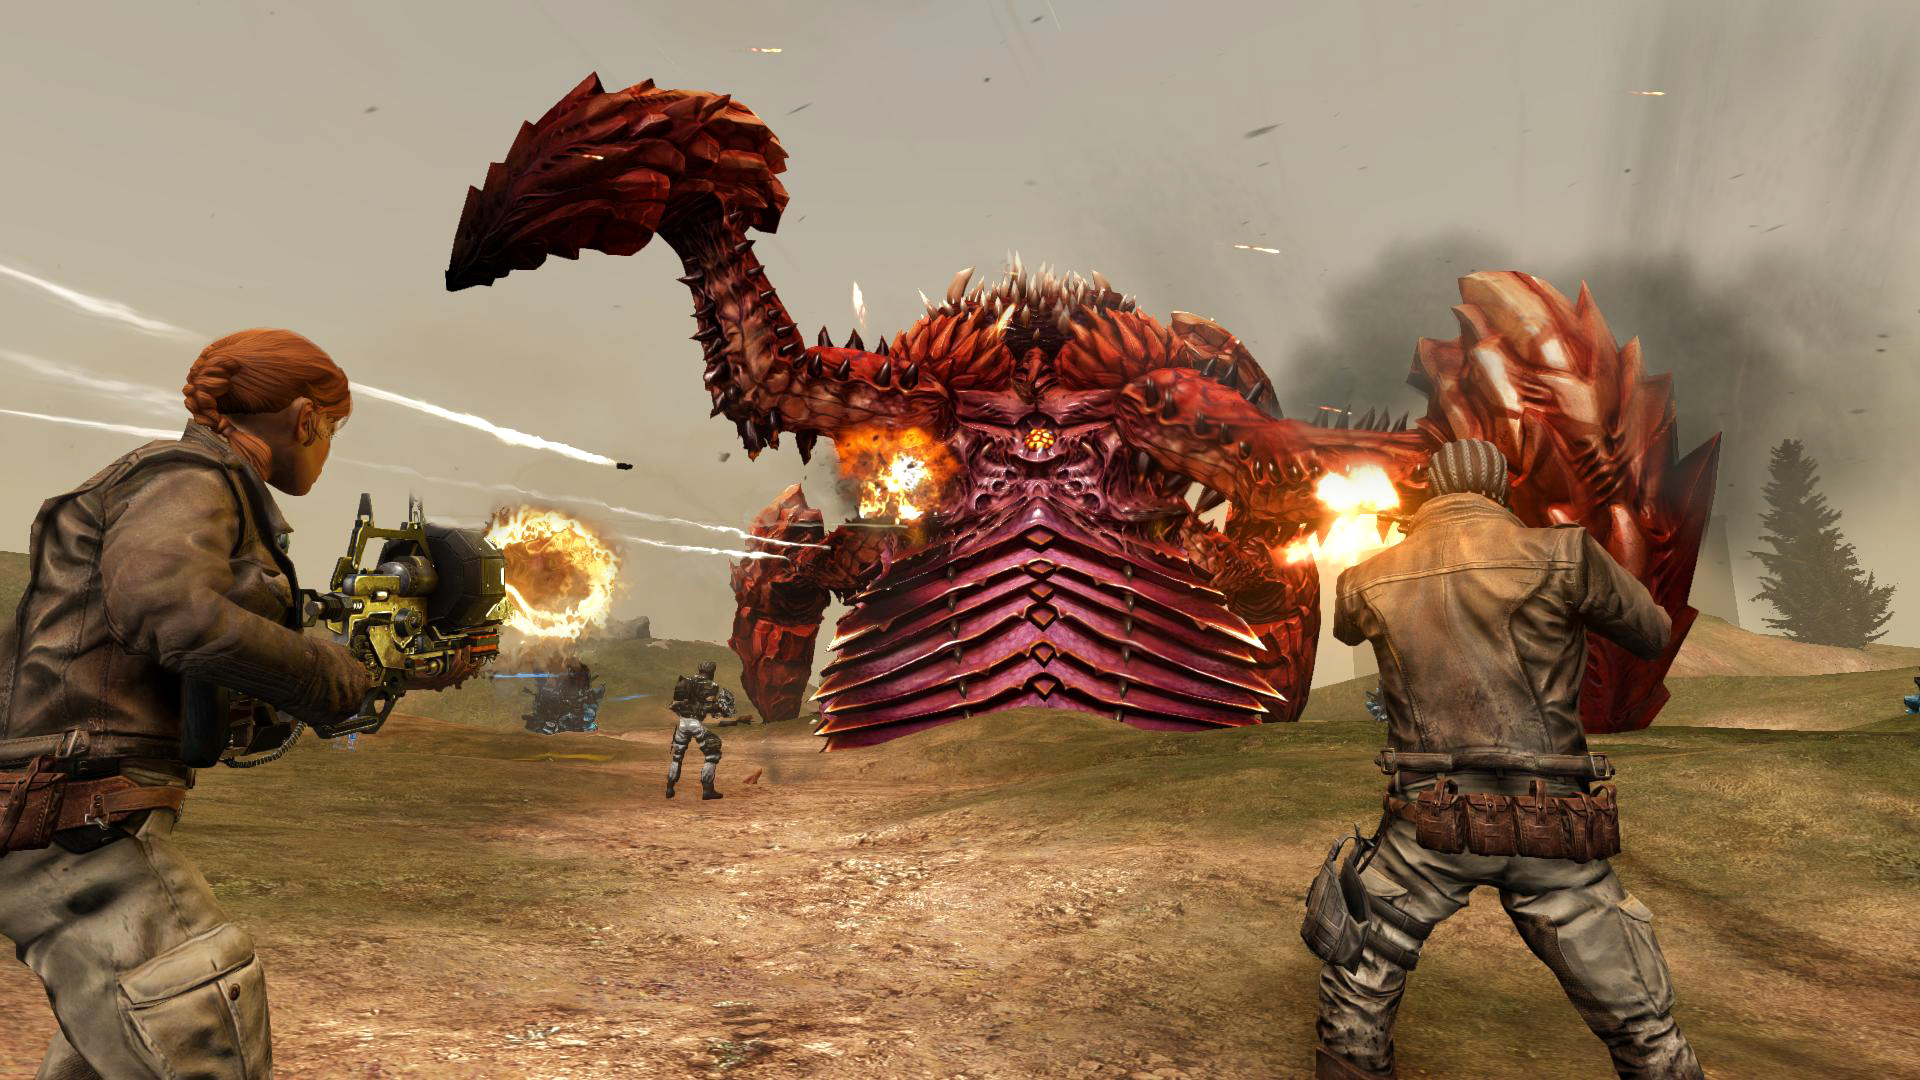 Defiance 2050 เกม Online Shooter เล่นฟรีได้เลยวันนี้ใน Ps4, Xbox One, Pc (ชม เกมเพลย์)